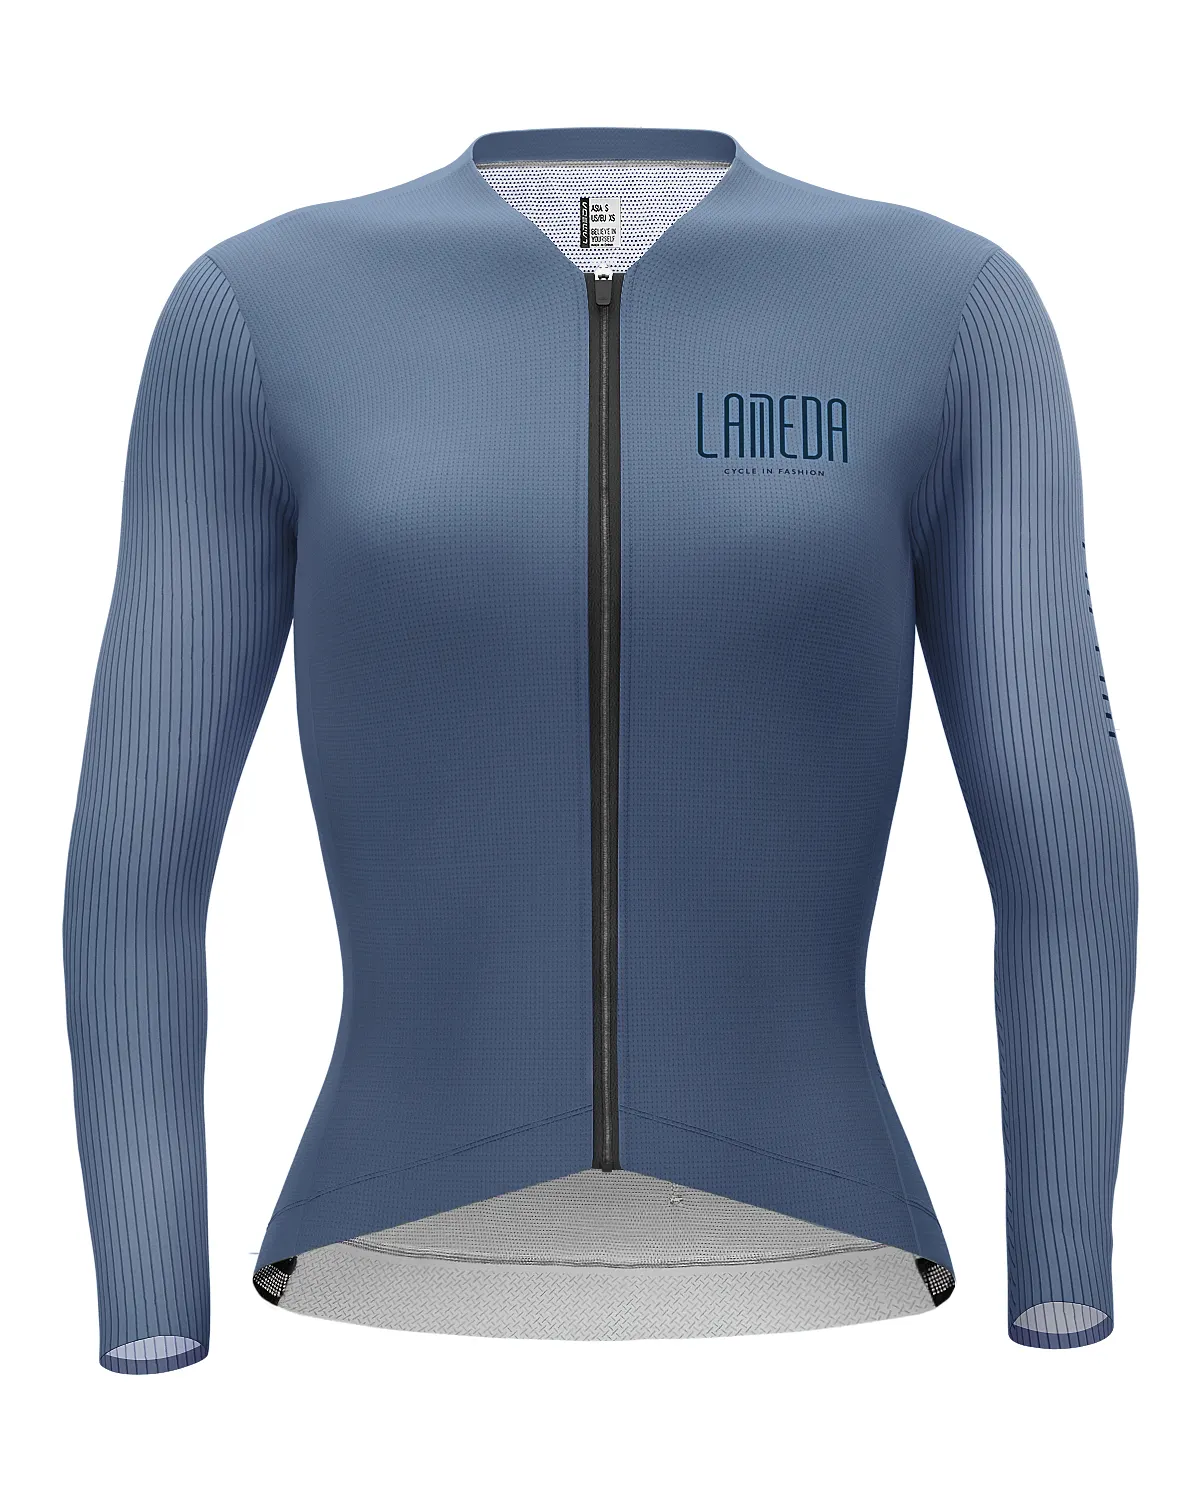 LAMBDA tejido Coolmax sublimado diseño libre de bicicleta Tops ciclismo camisetas